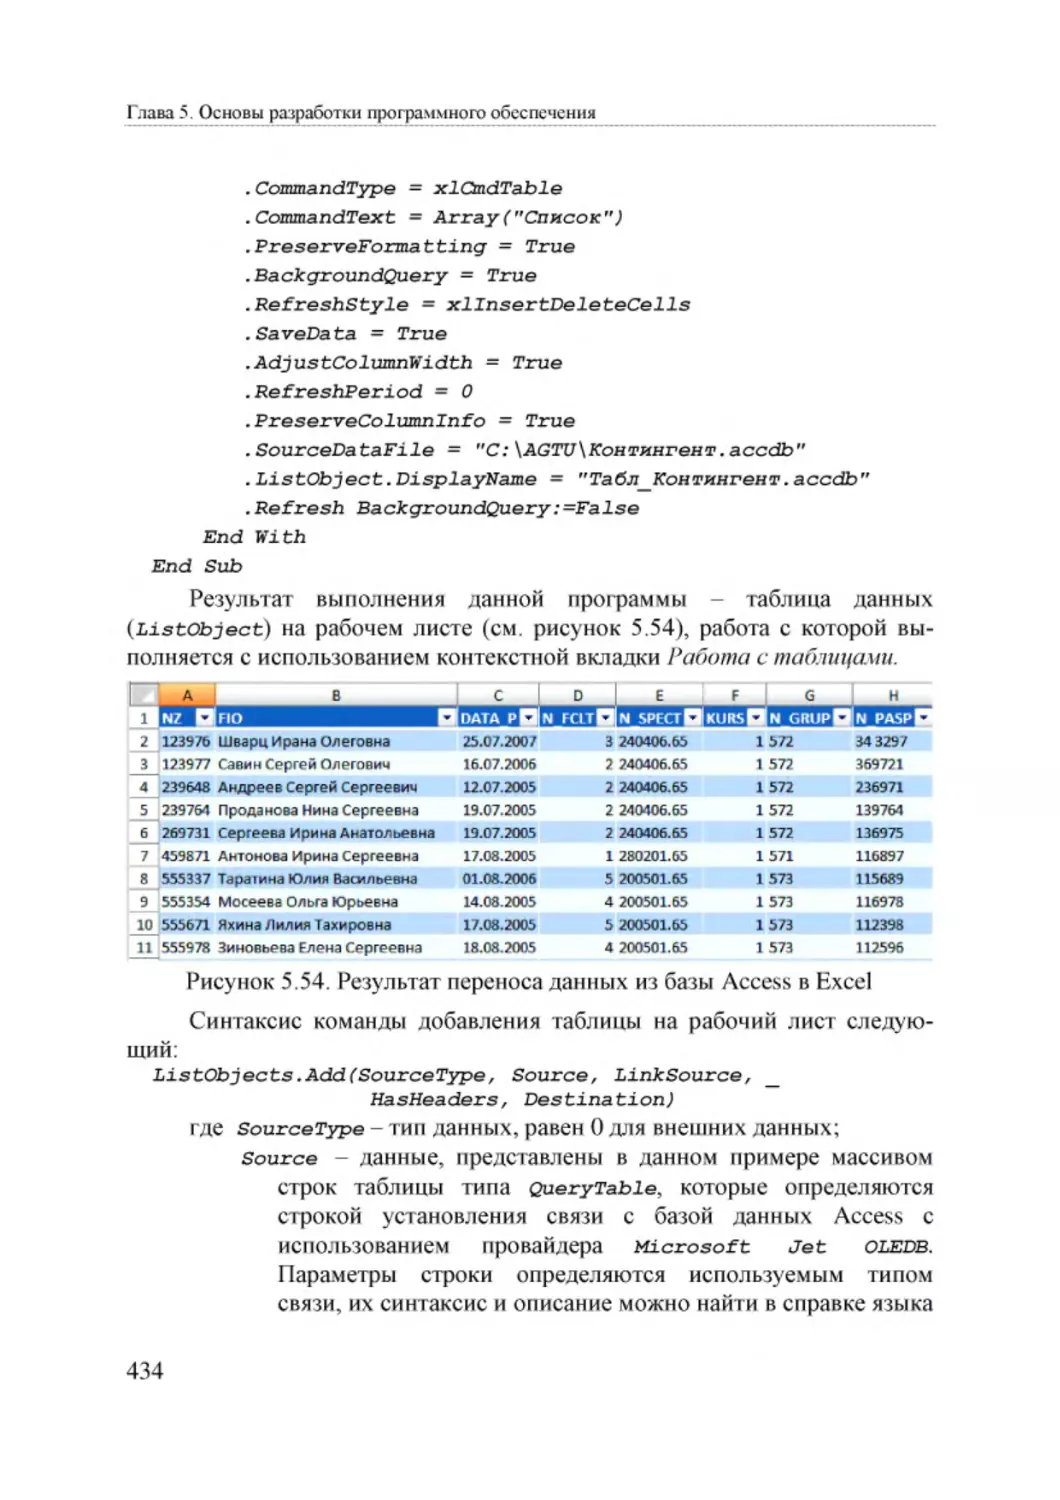 Informatika_Uchebnik_dlya_vuzov_2010 434